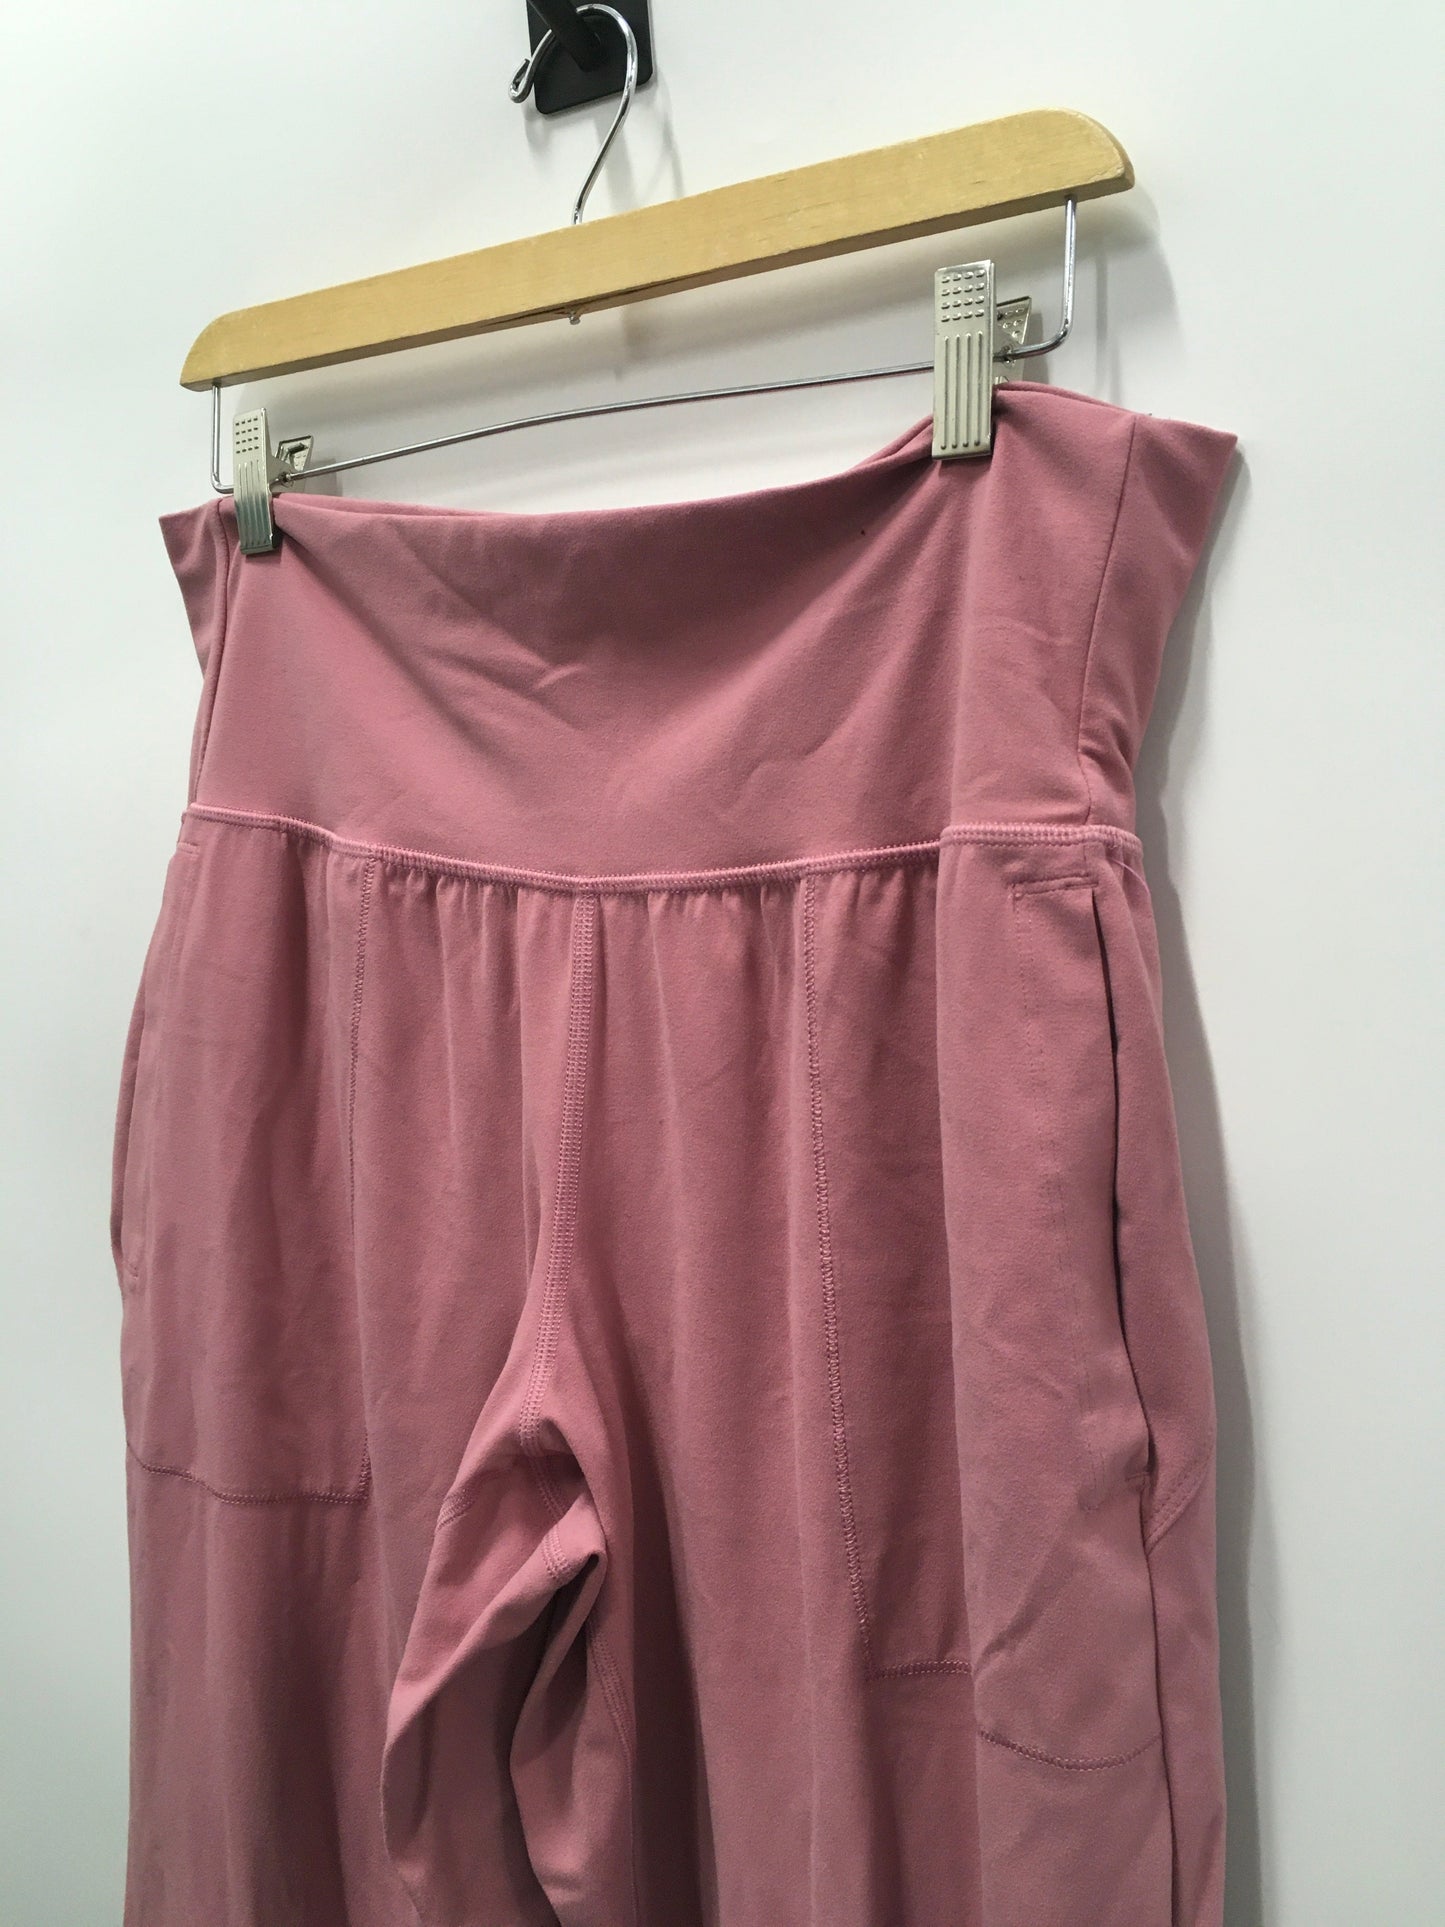 Pink Athletic Shorts Athleta, Size 1x